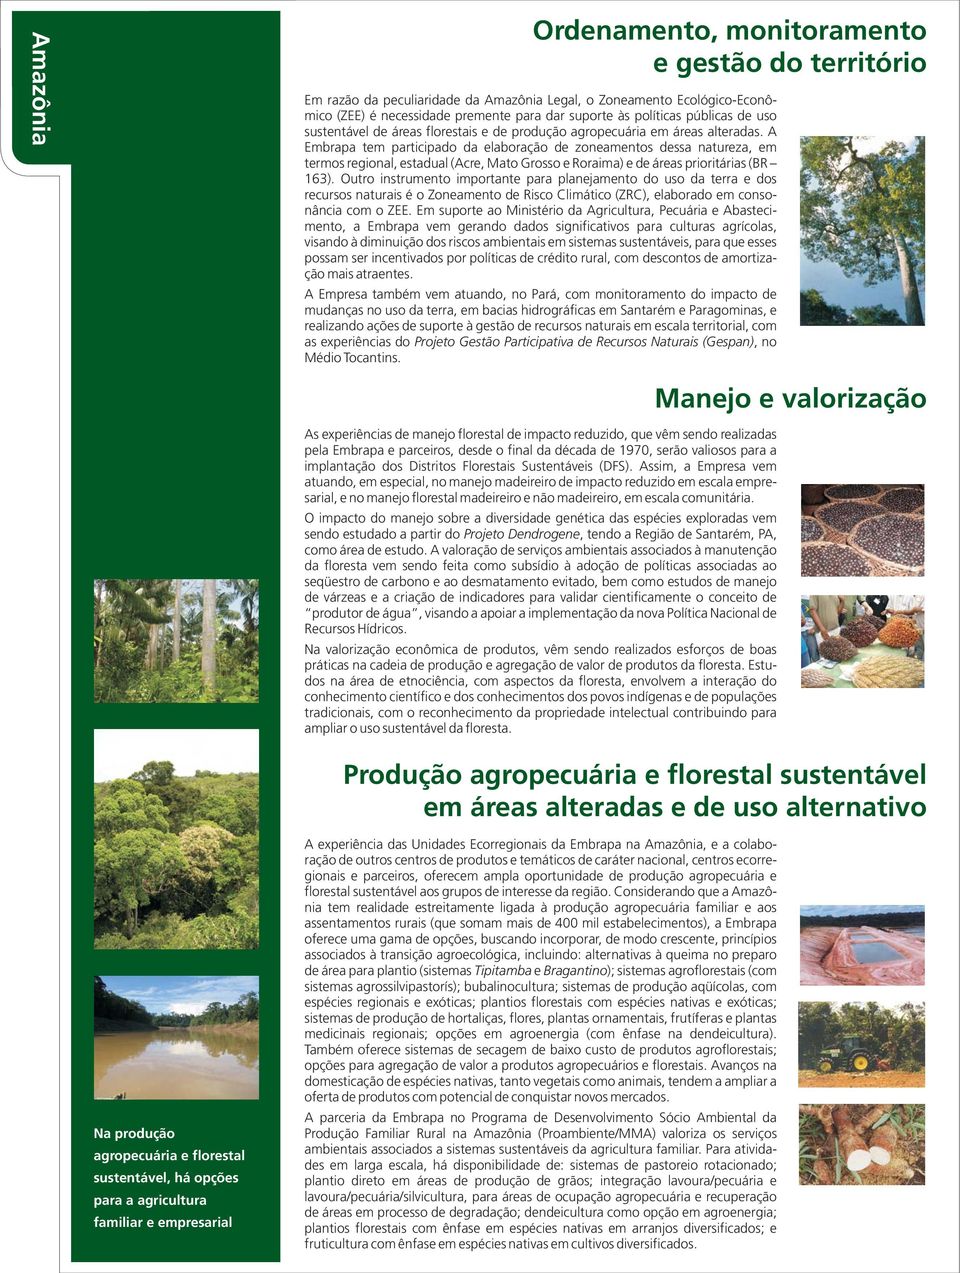 A Embrapa tem participado da elaboração de zoneamentos dessa natureza, em termos regional, estadual (Acre, Mato Grosso e Roraima) e de áreas prioritárias (BR 163).